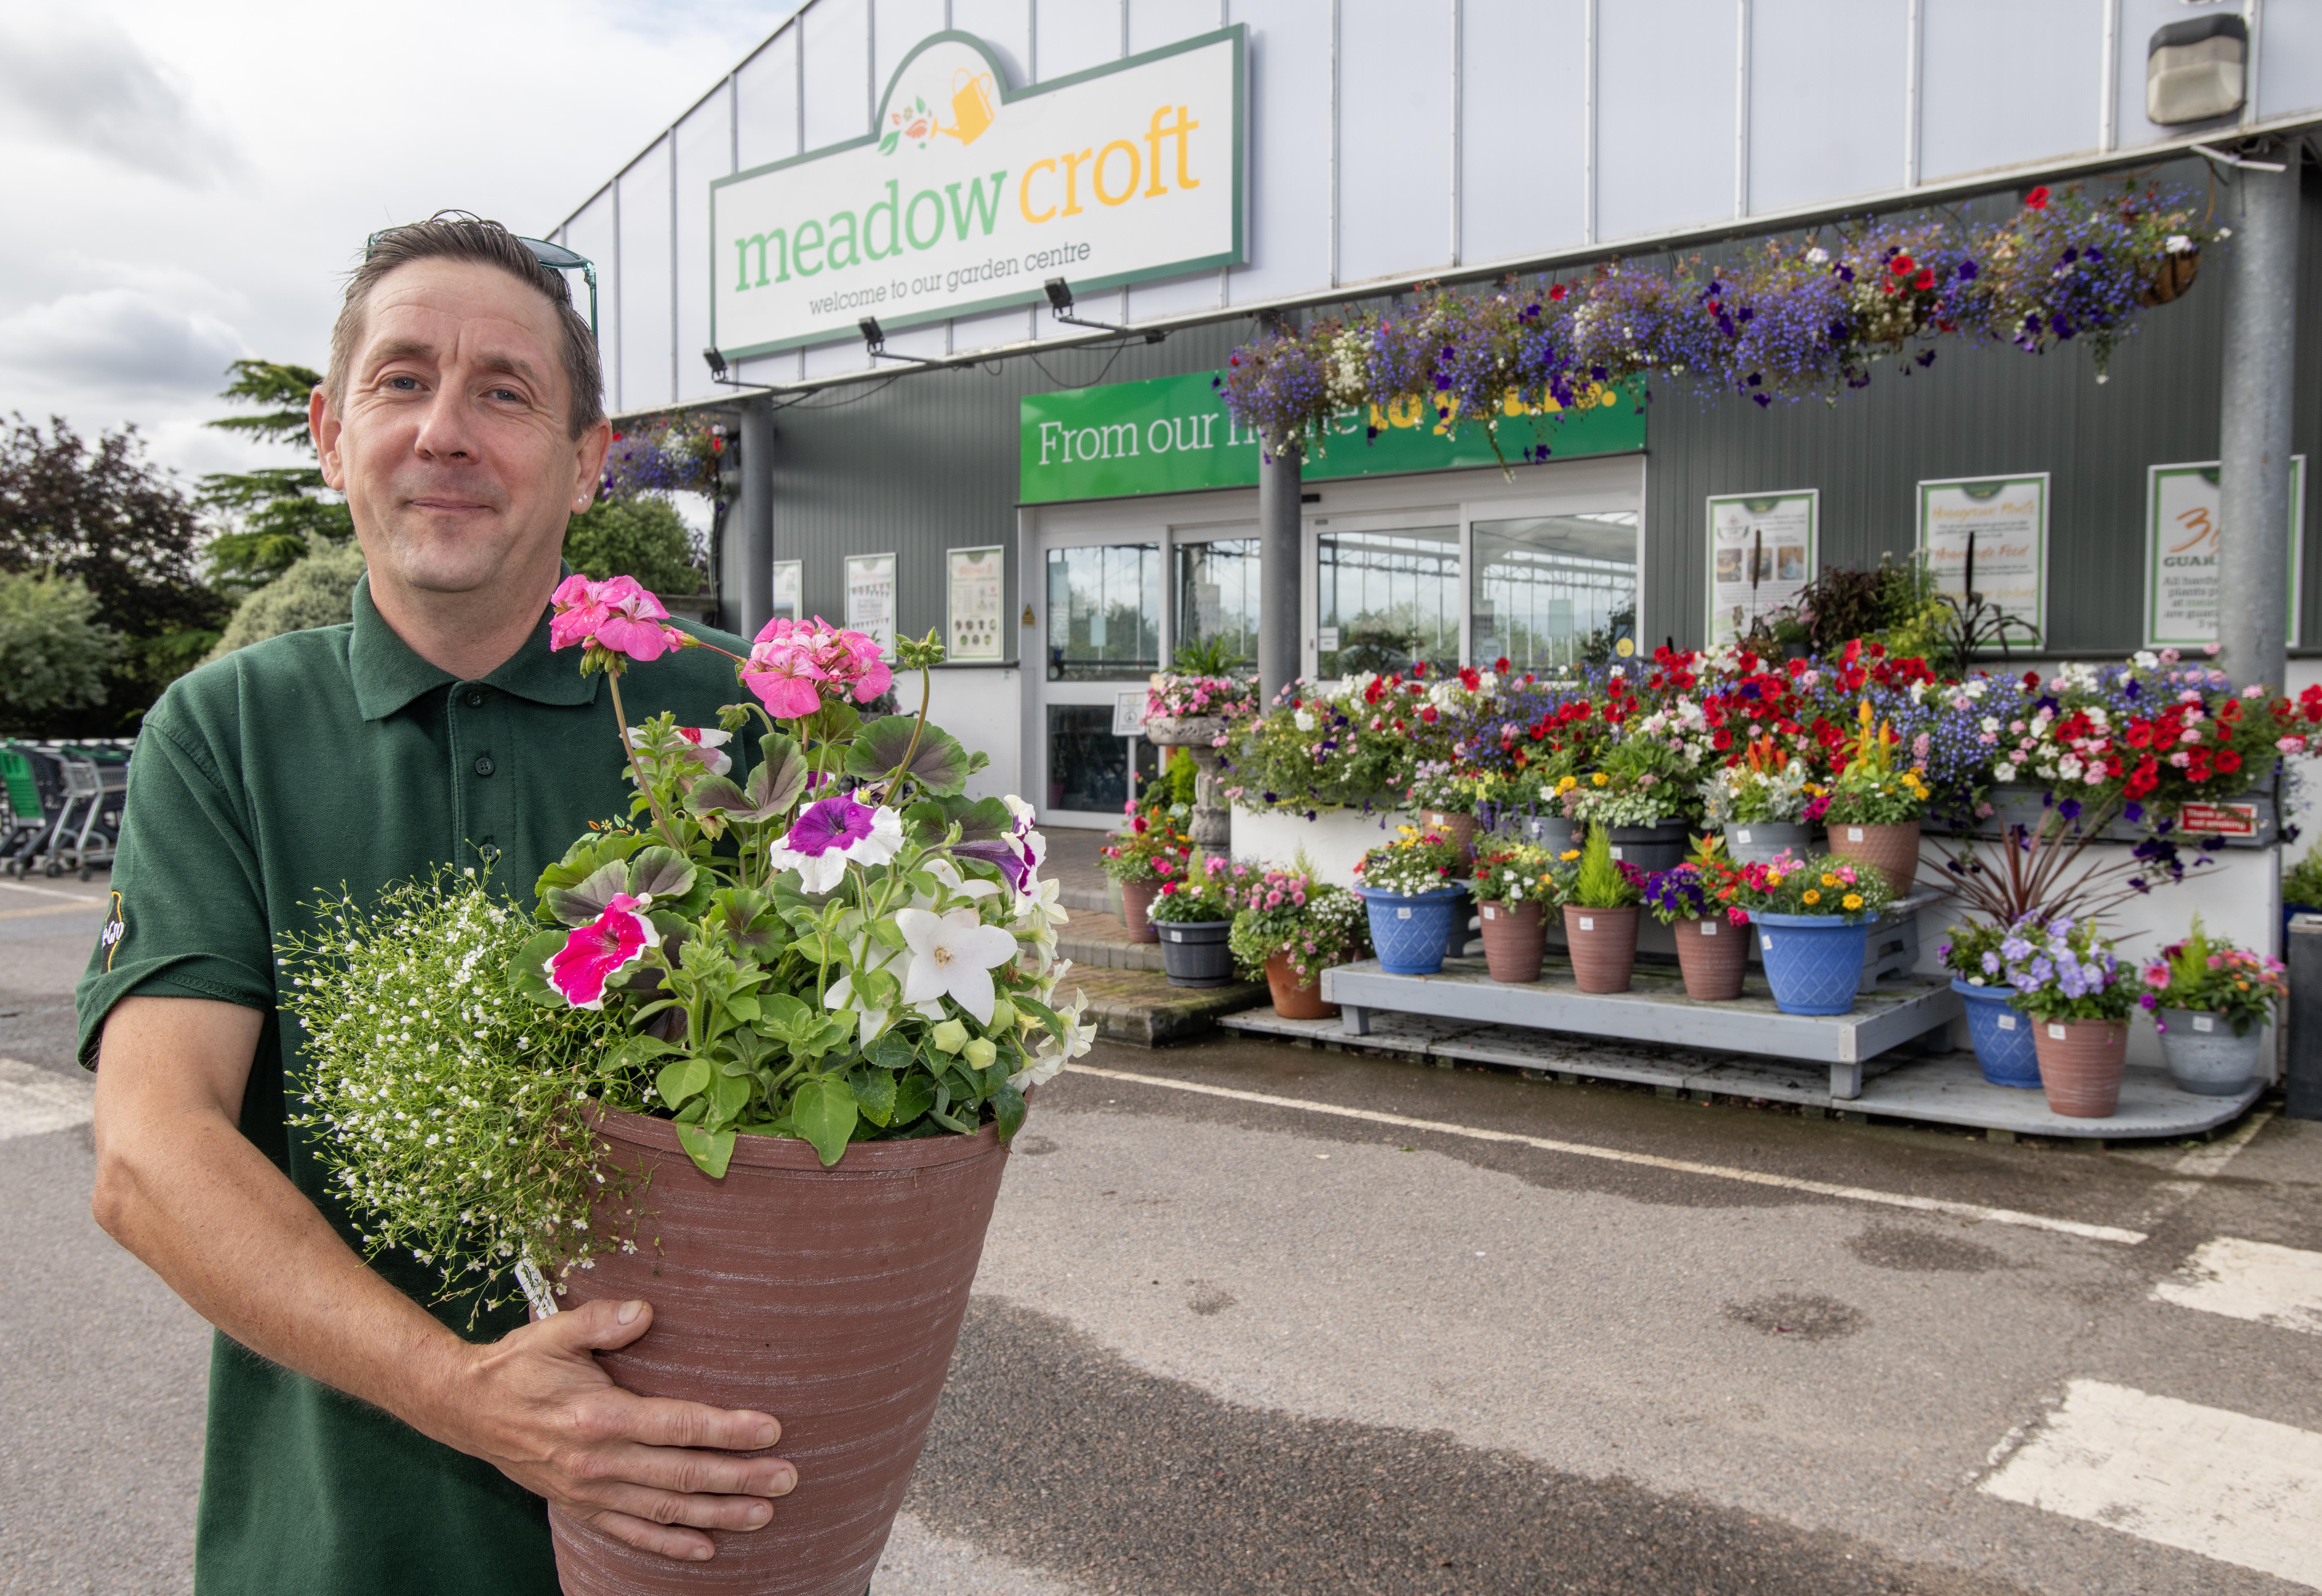 Michael Bosman, Pflanzenassistent bei Meadow Croft, kann es kaum erwarten, dass Kunden den Markt besuchen